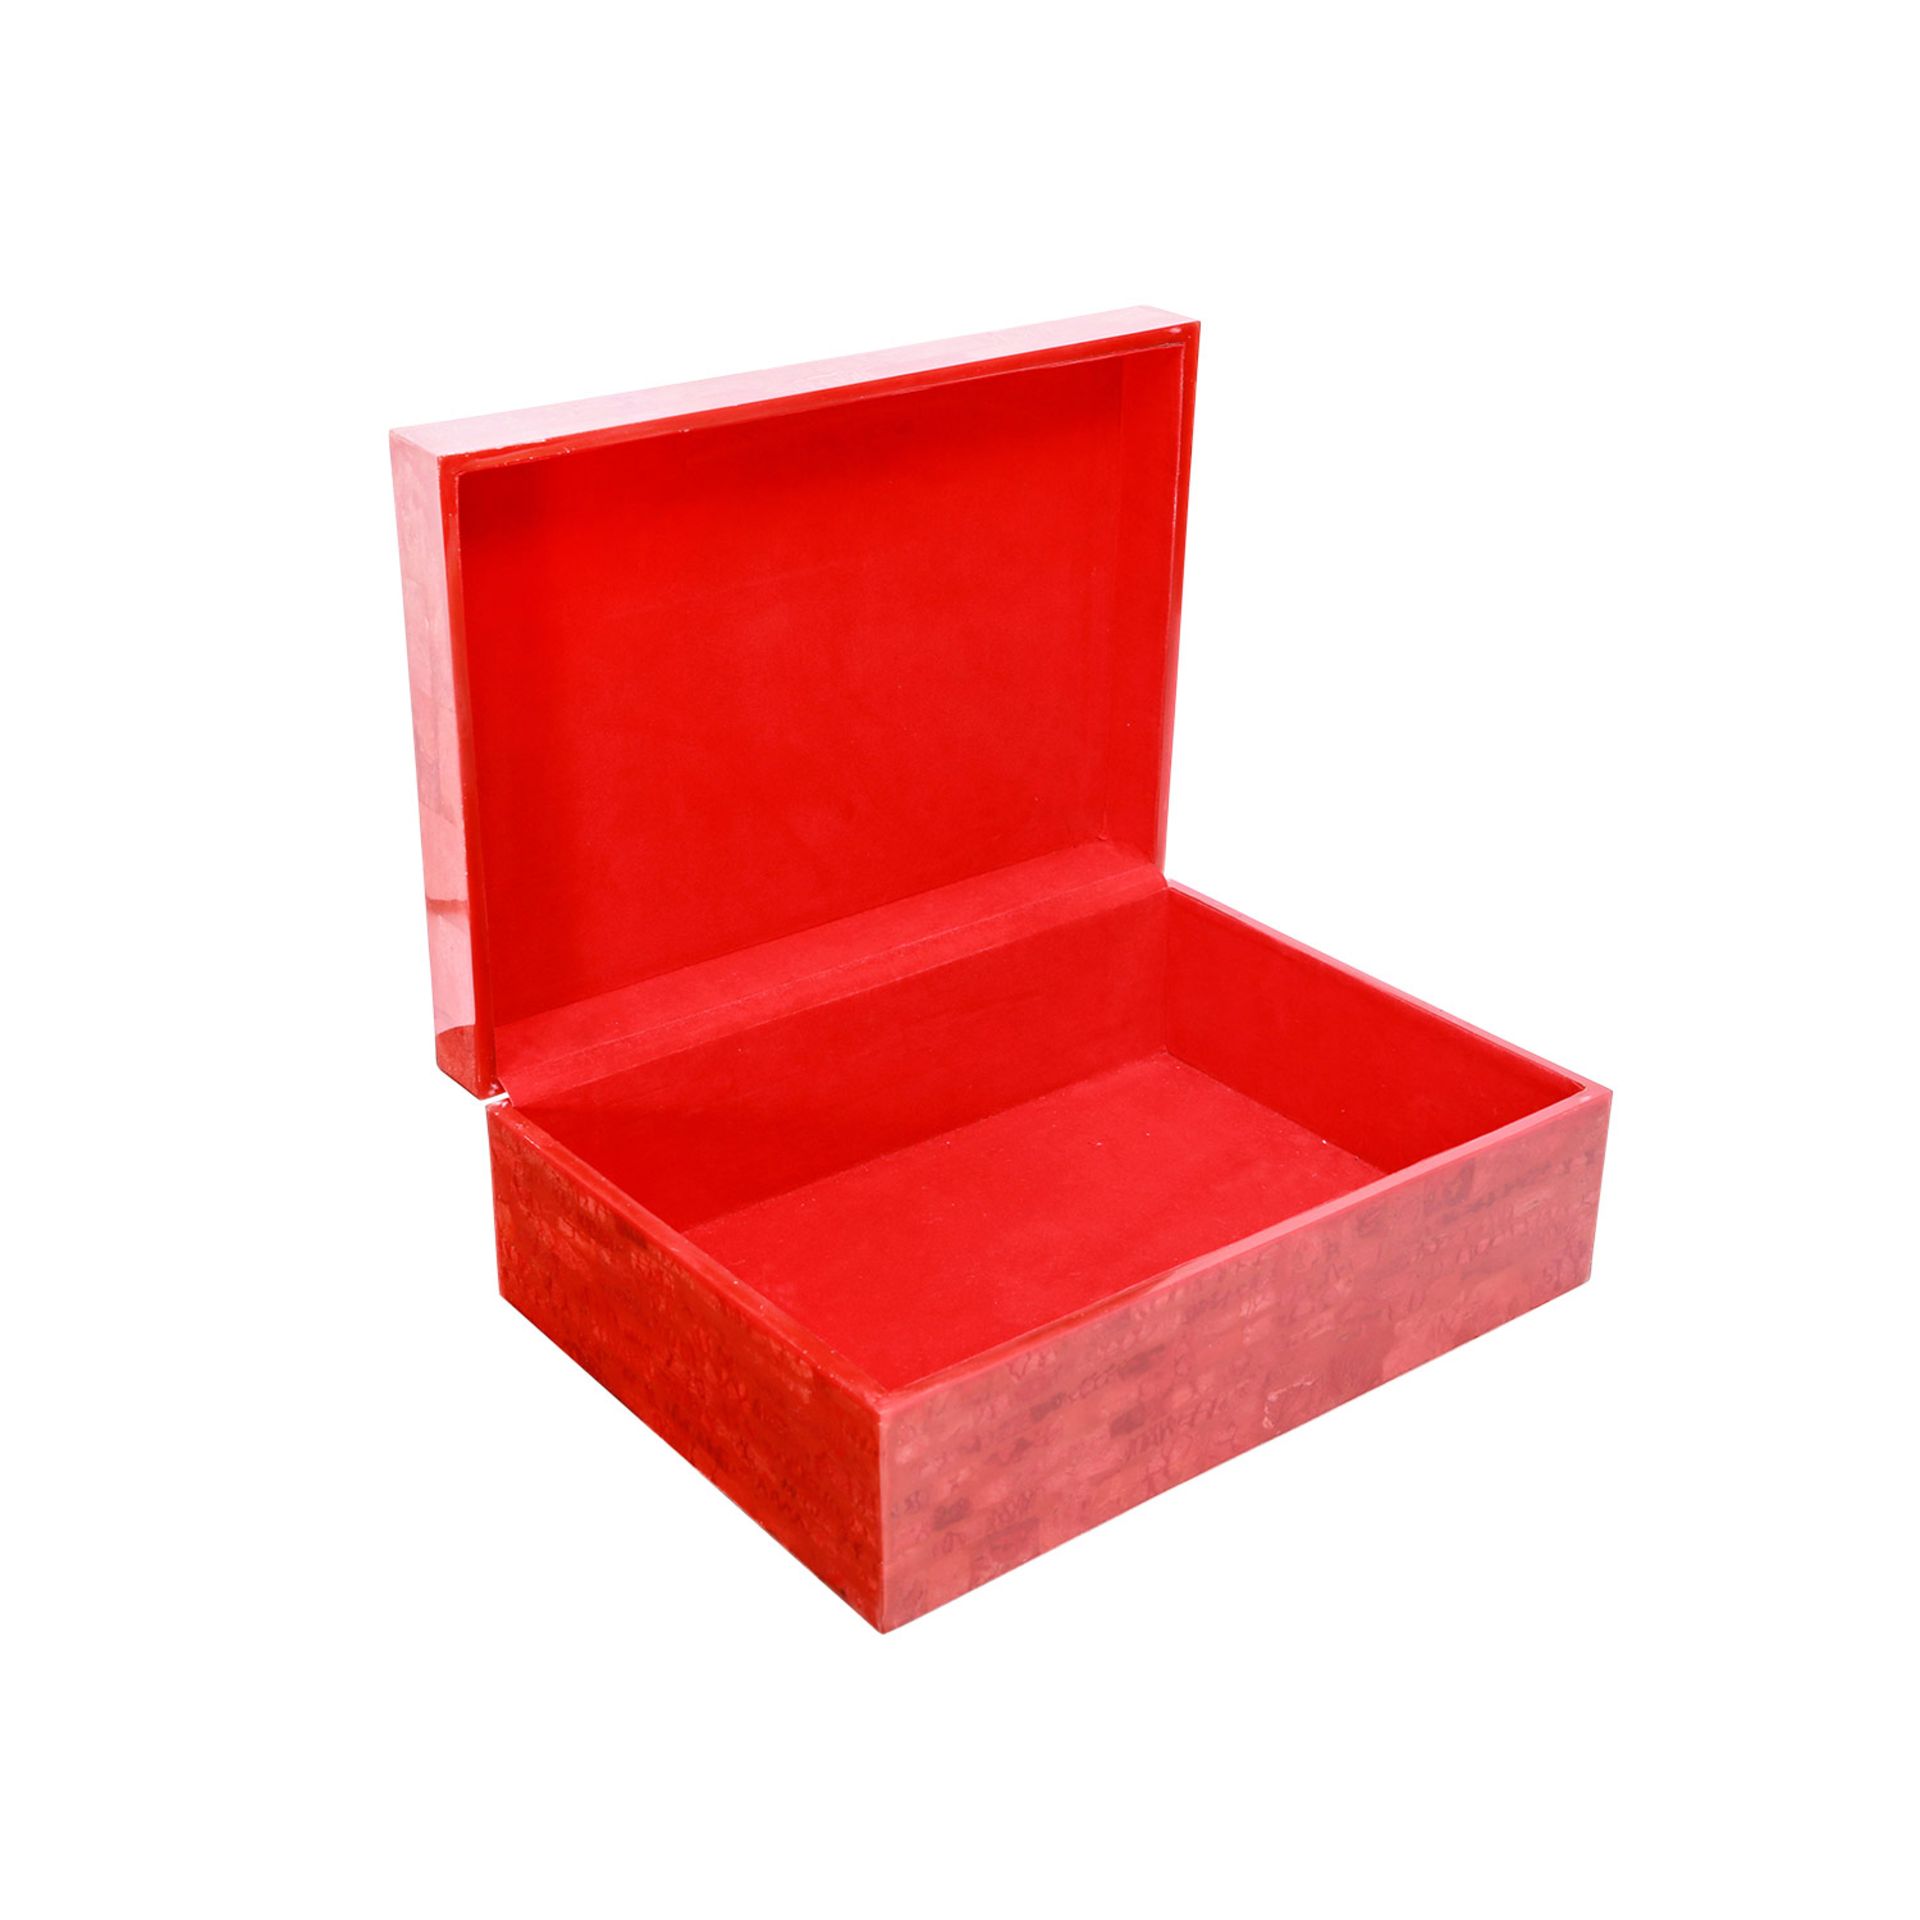 Schmuckkassette. Große Box in Hochglanzlack Rot, marmoriertes Design, rotes Innenfutter, - Bild 5 aus 6